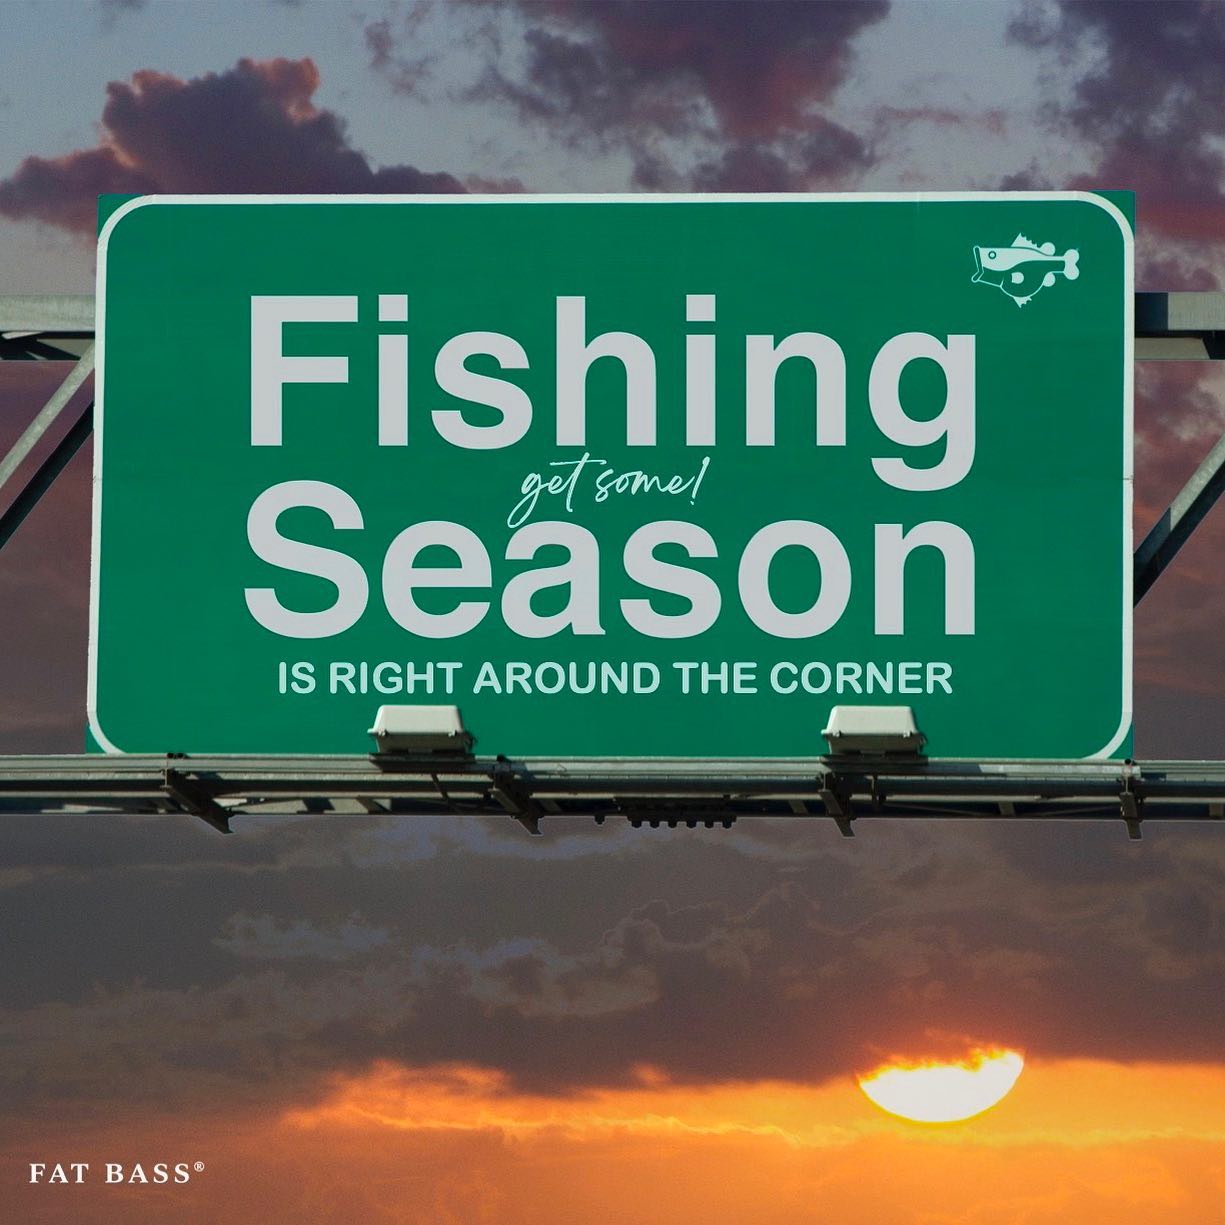 Fishing season is right around the corner!